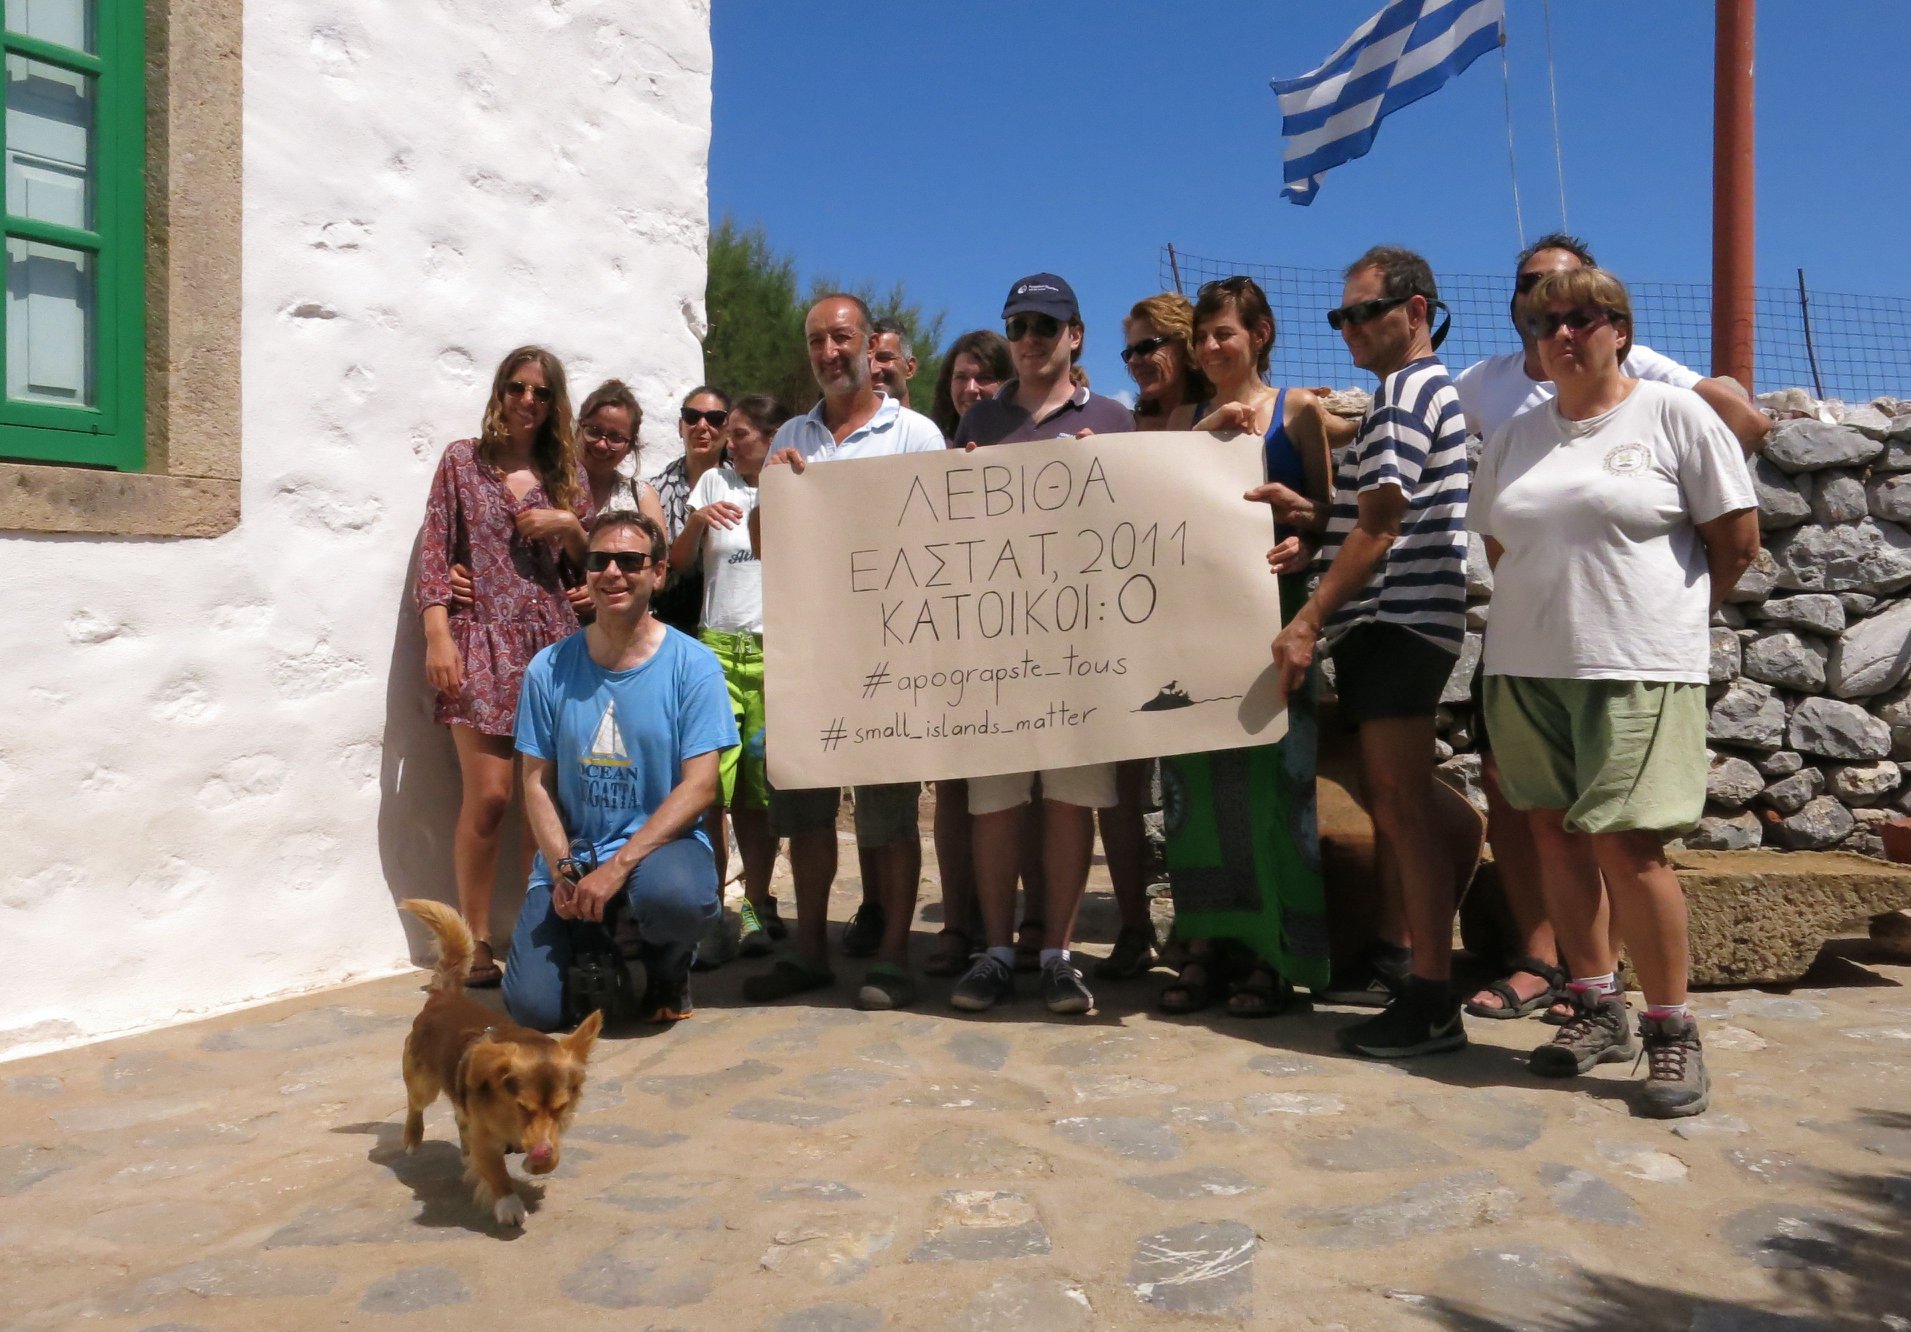 Κίνηση για την προστασία των νησίδων του Αιγαίου: Επιστολή προς τον Υπουργό Εθνικής Άμυνας με θέμα "Μόνιμη κατοίκηση των νησιών ΚΙΝΑΡΟΣ και ΛΕΒΙΘΑ"